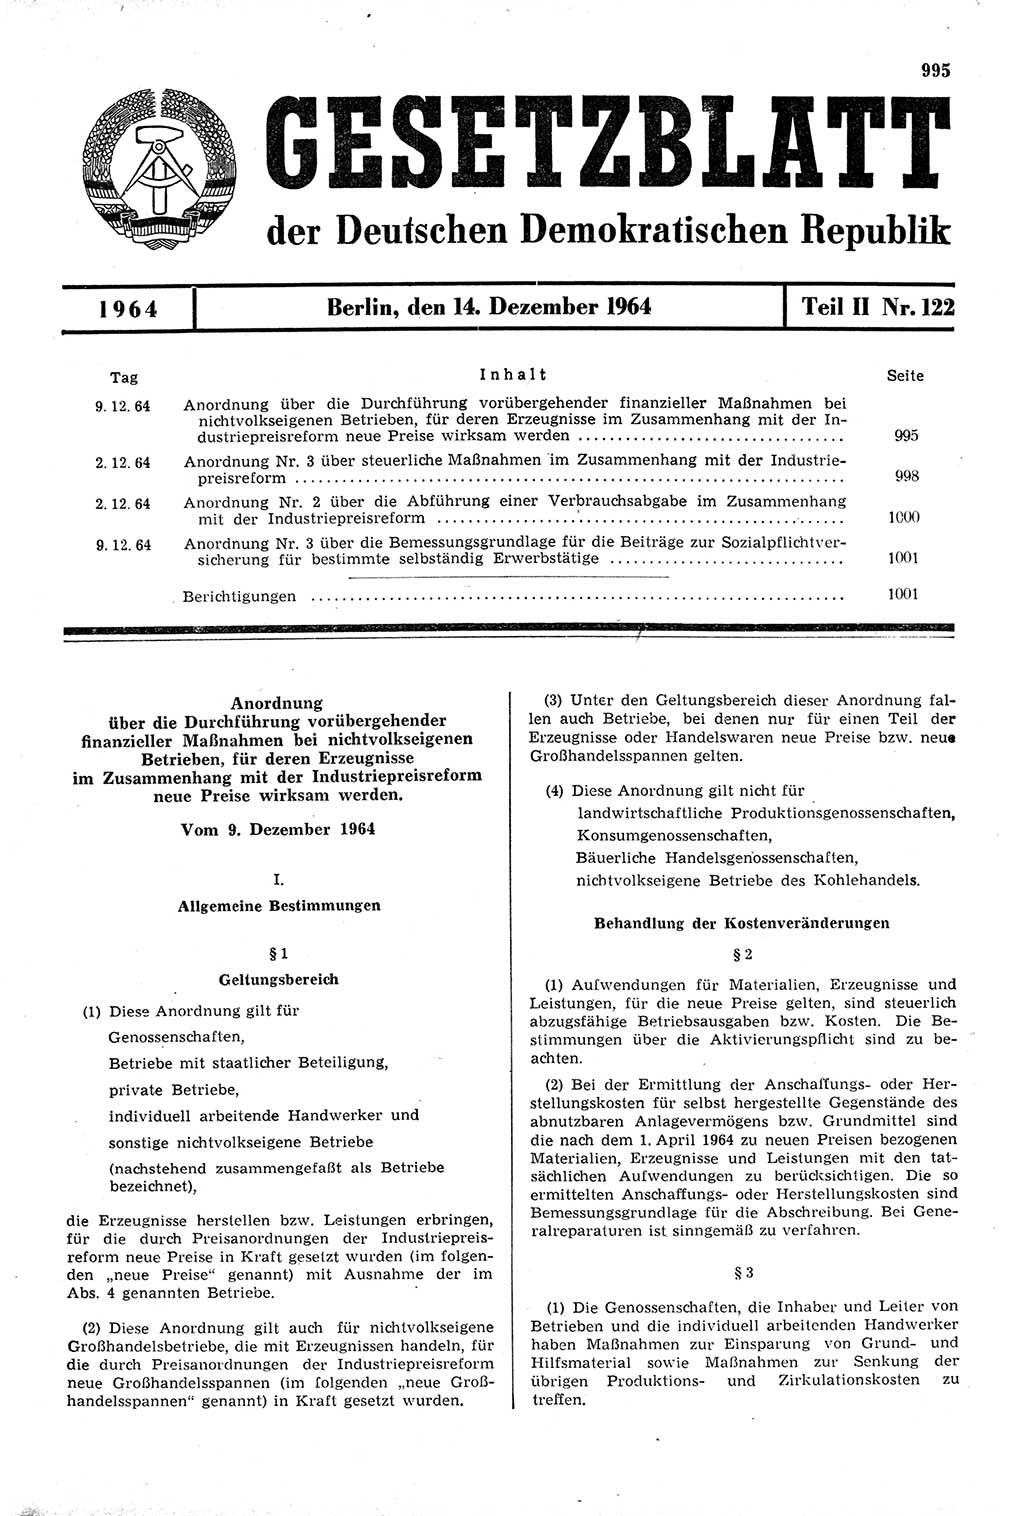 Gesetzblatt (GBl.) der Deutschen Demokratischen Republik (DDR) Teil ⅠⅠ 1964, Seite 995 (GBl. DDR ⅠⅠ 1964, S. 995)